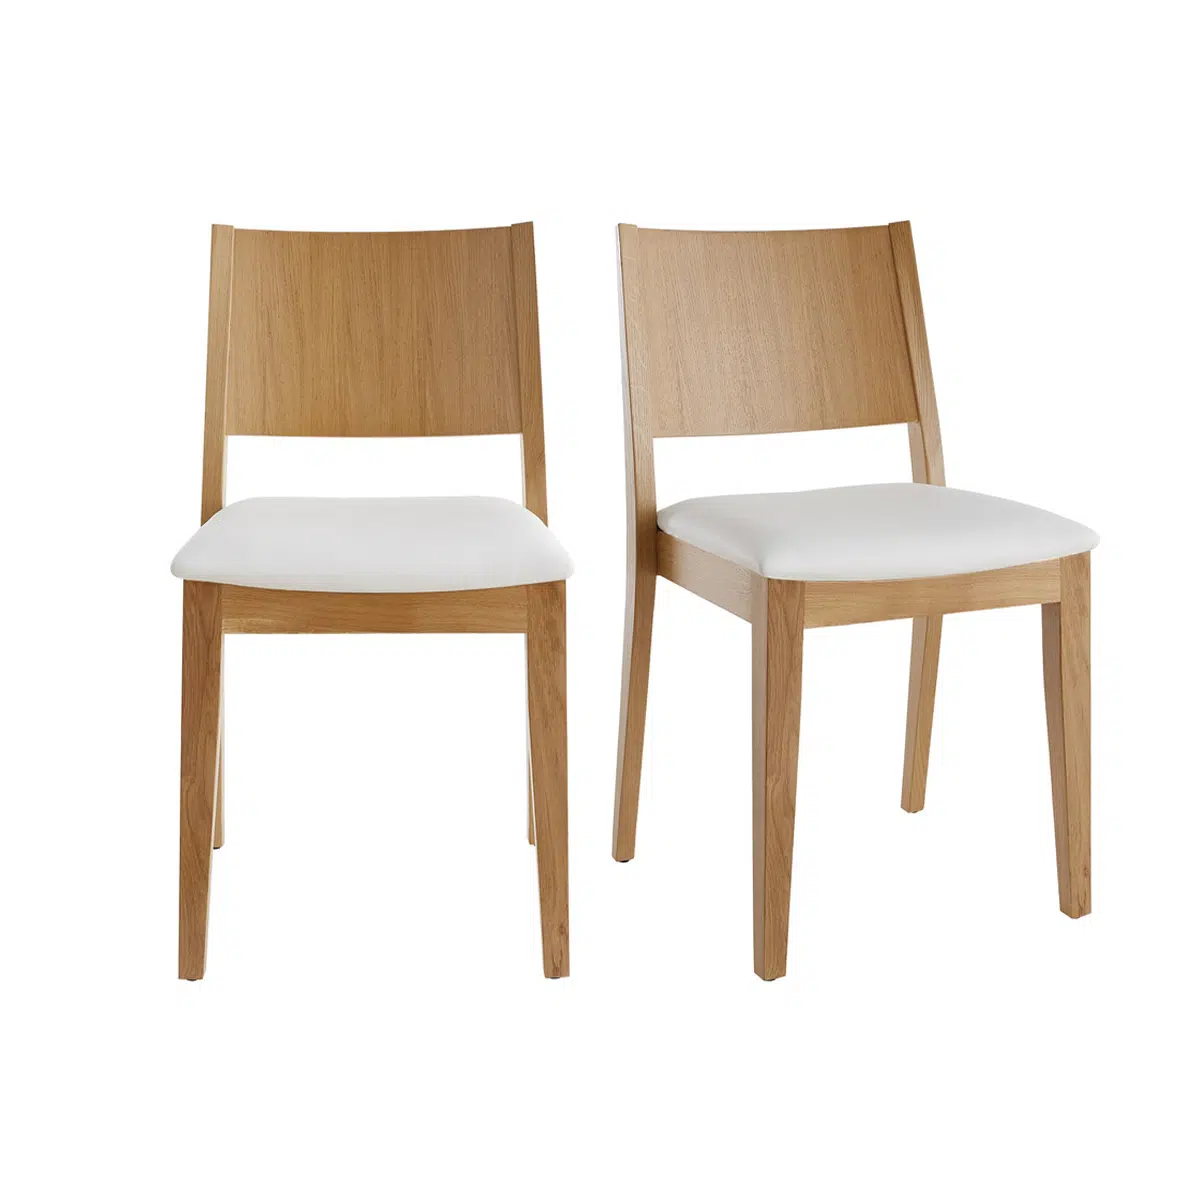 Chaises scandinaves bois clair chêne et assises blanches (lot de 2) MELVIL